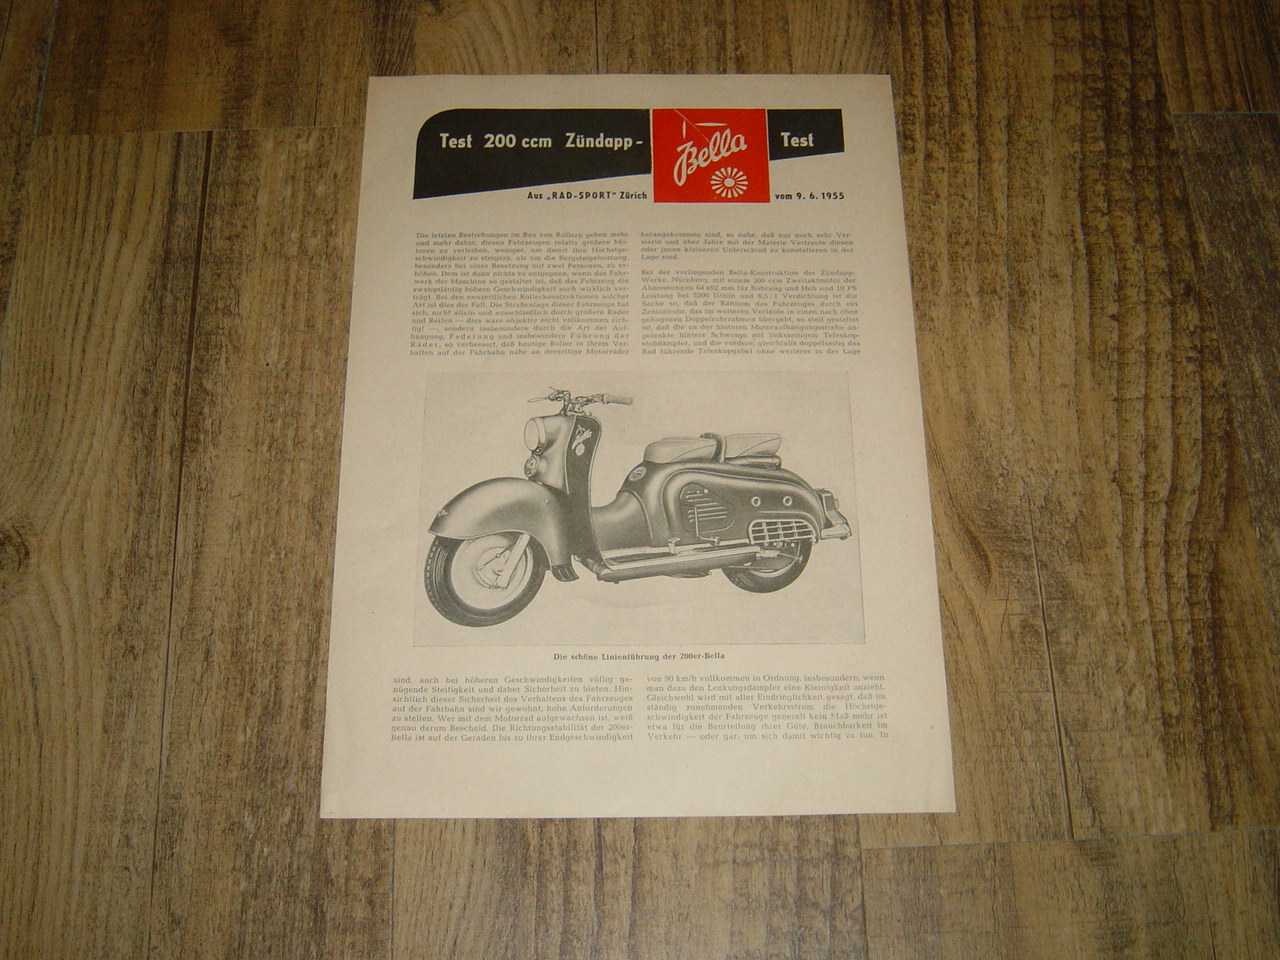 Promotional brochure D - Testbericht der Zündapp Bella 200 1955